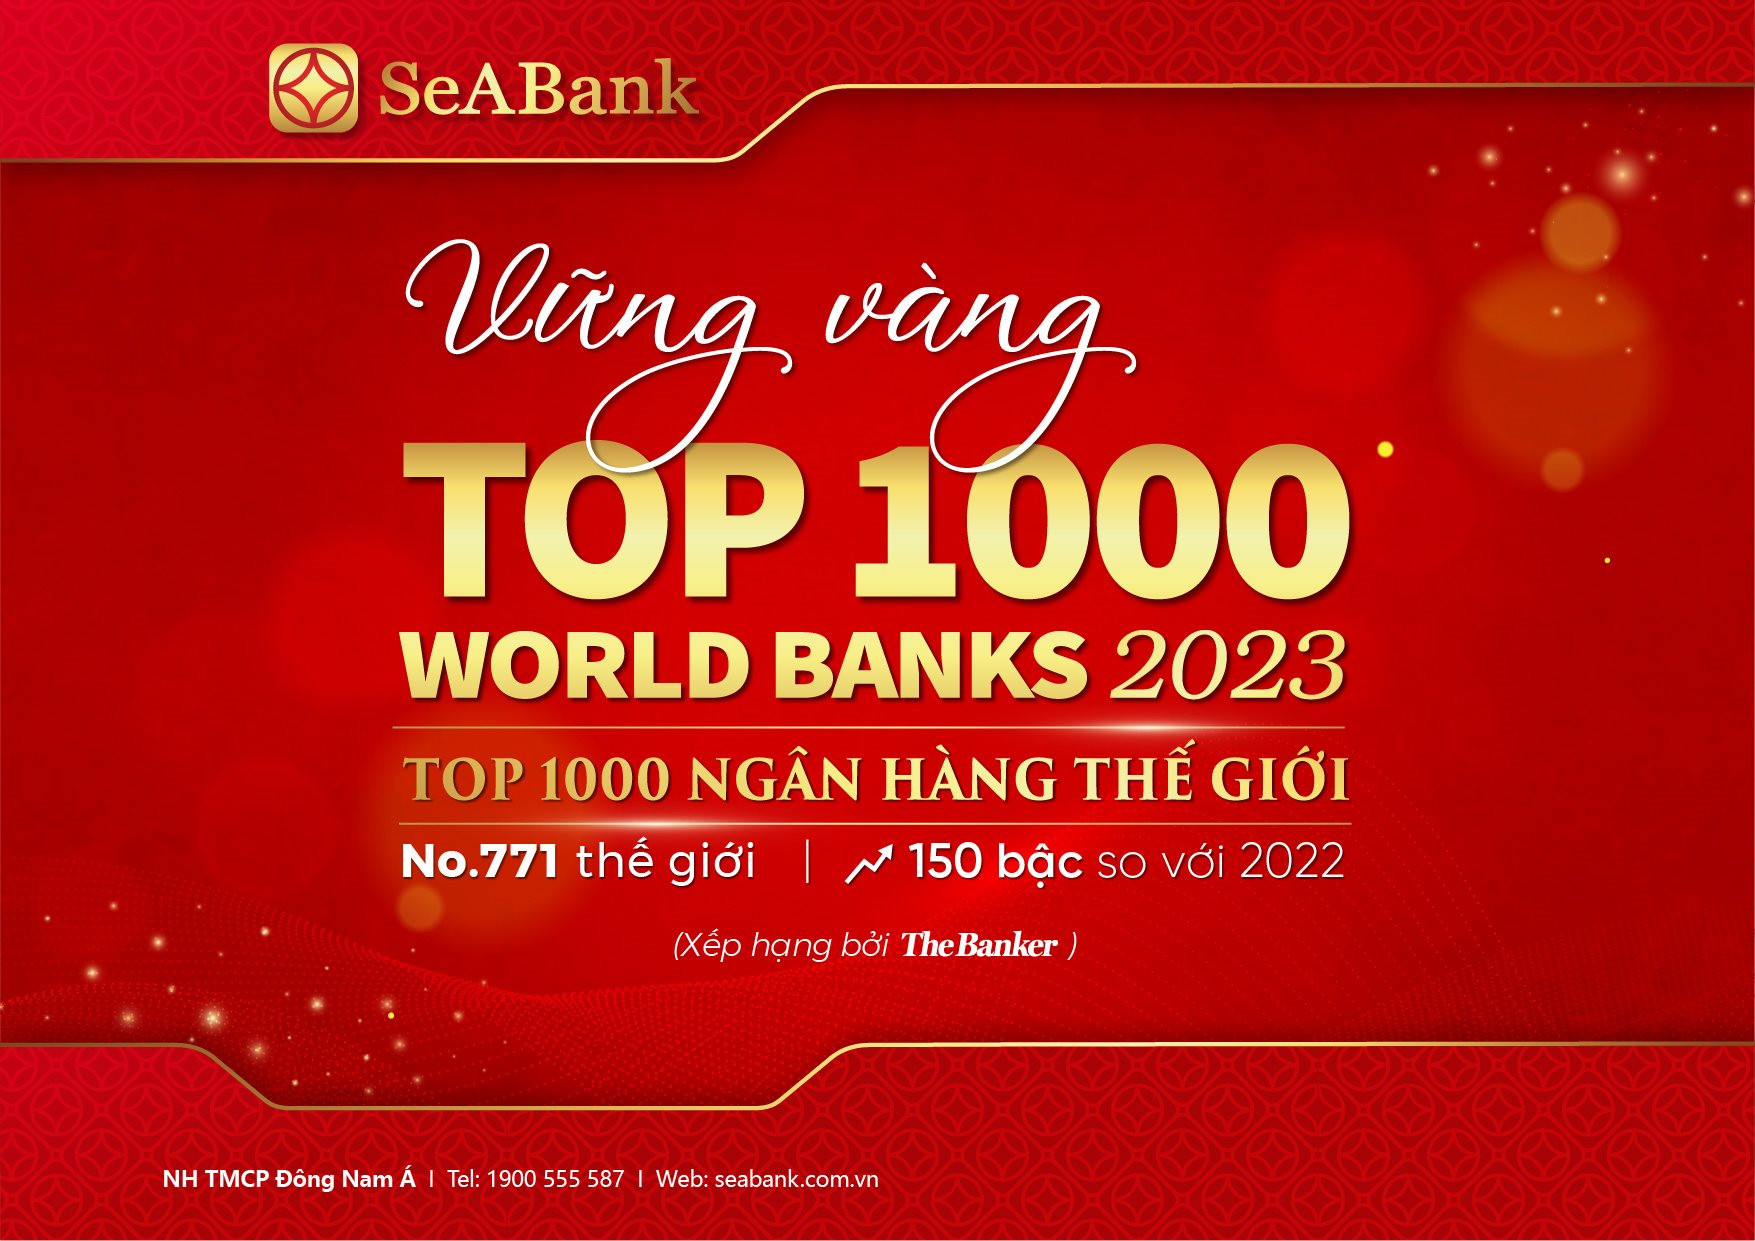 sb-top1000-worldbank-2023-10-02_a4-ngang-copy-2.jpg